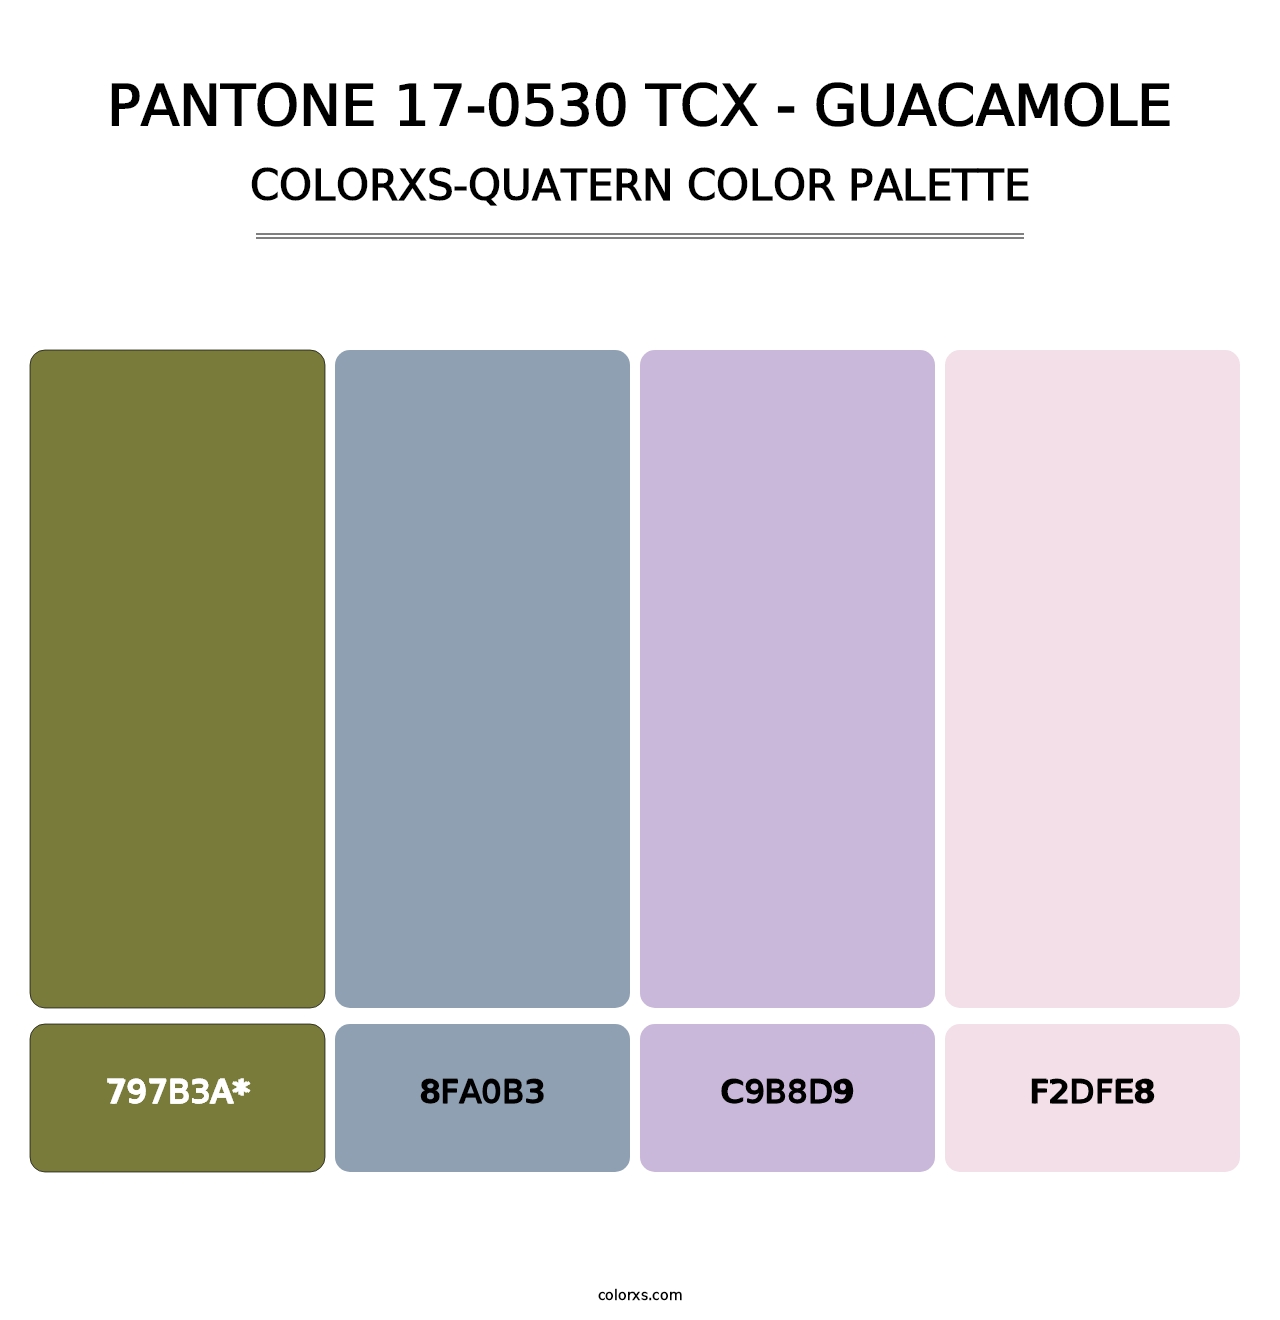 PANTONE 17-0530 TCX - Guacamole - Colorxs Quatern Palette